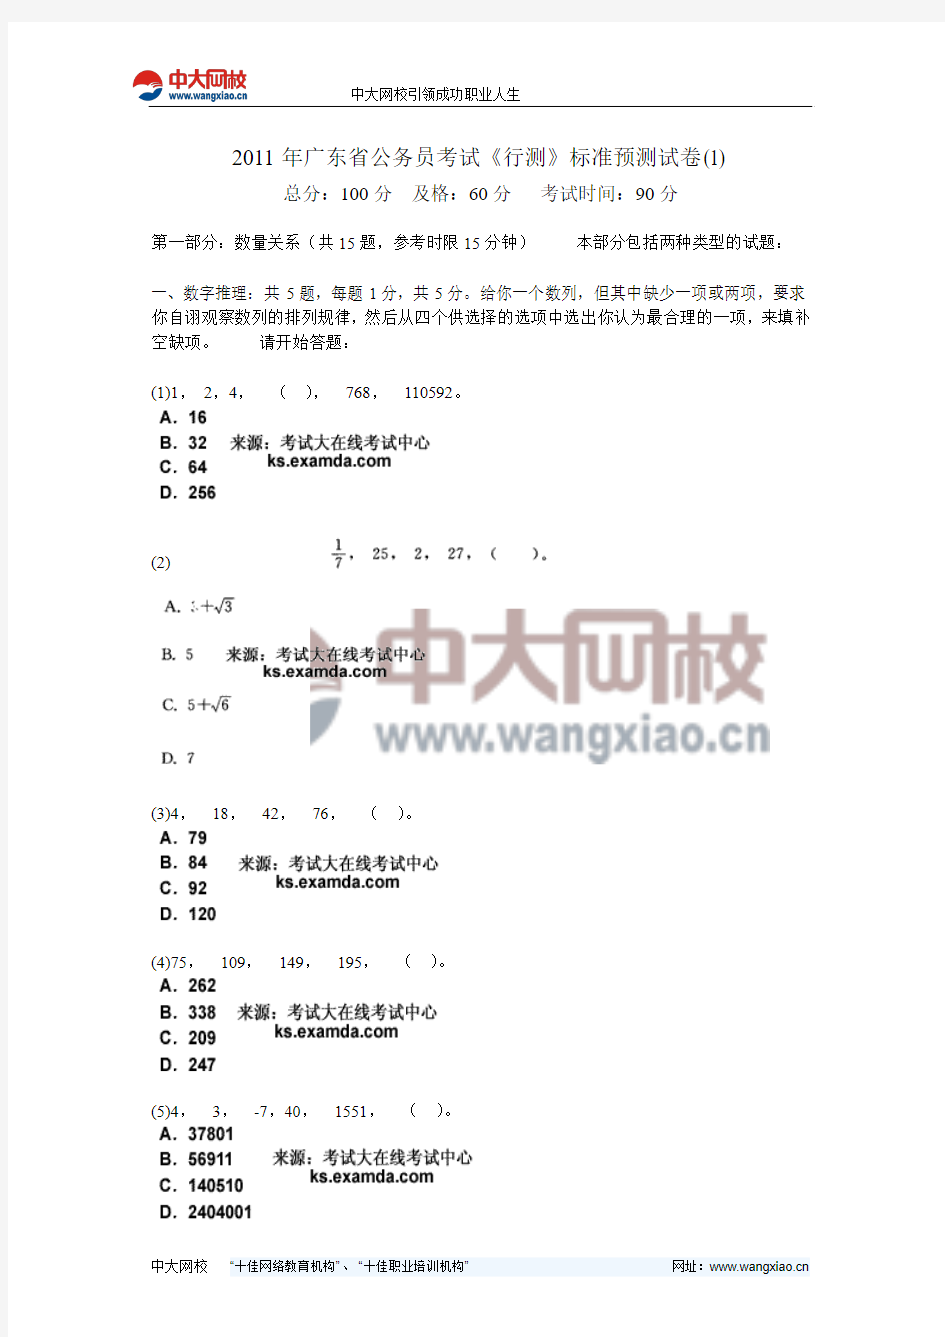 2011年广东省公务员考试《行测》标准预测试卷(1)-中大网校